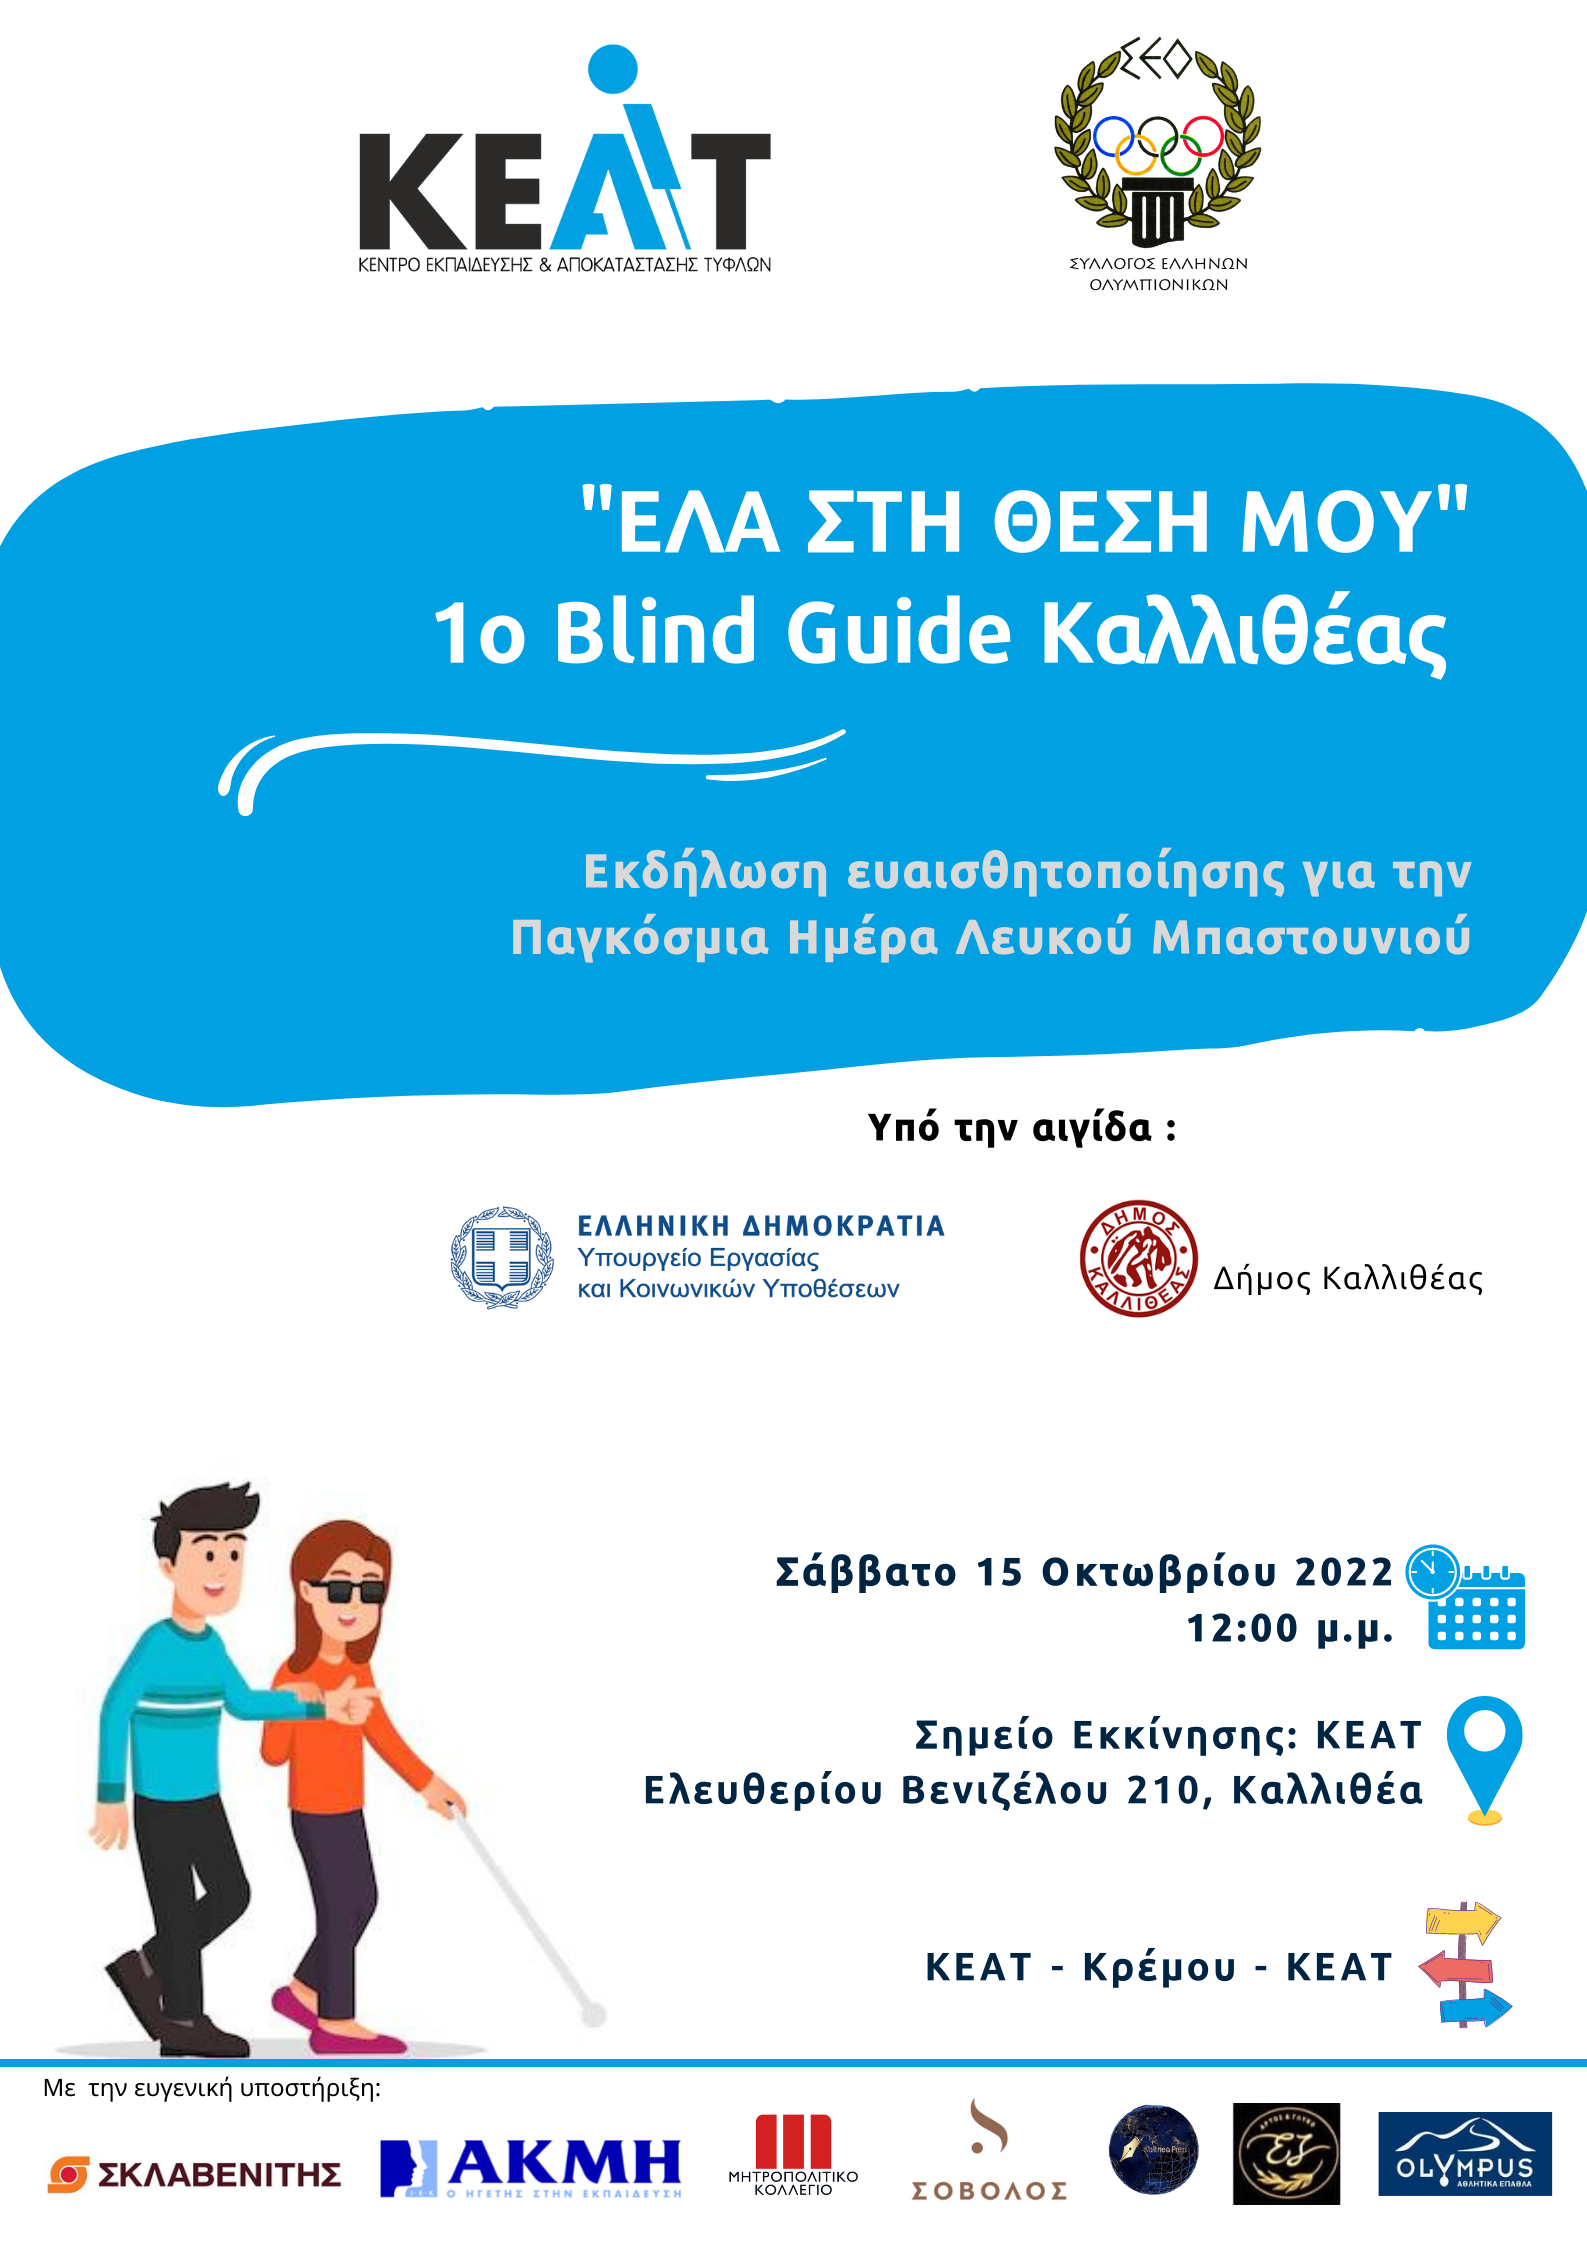 Αφίσα για τη δράση από Κέντρο Εκπαίδευσης και Αποκατάστασης Τυφλών (Κ.Ε.Α.Τ.).